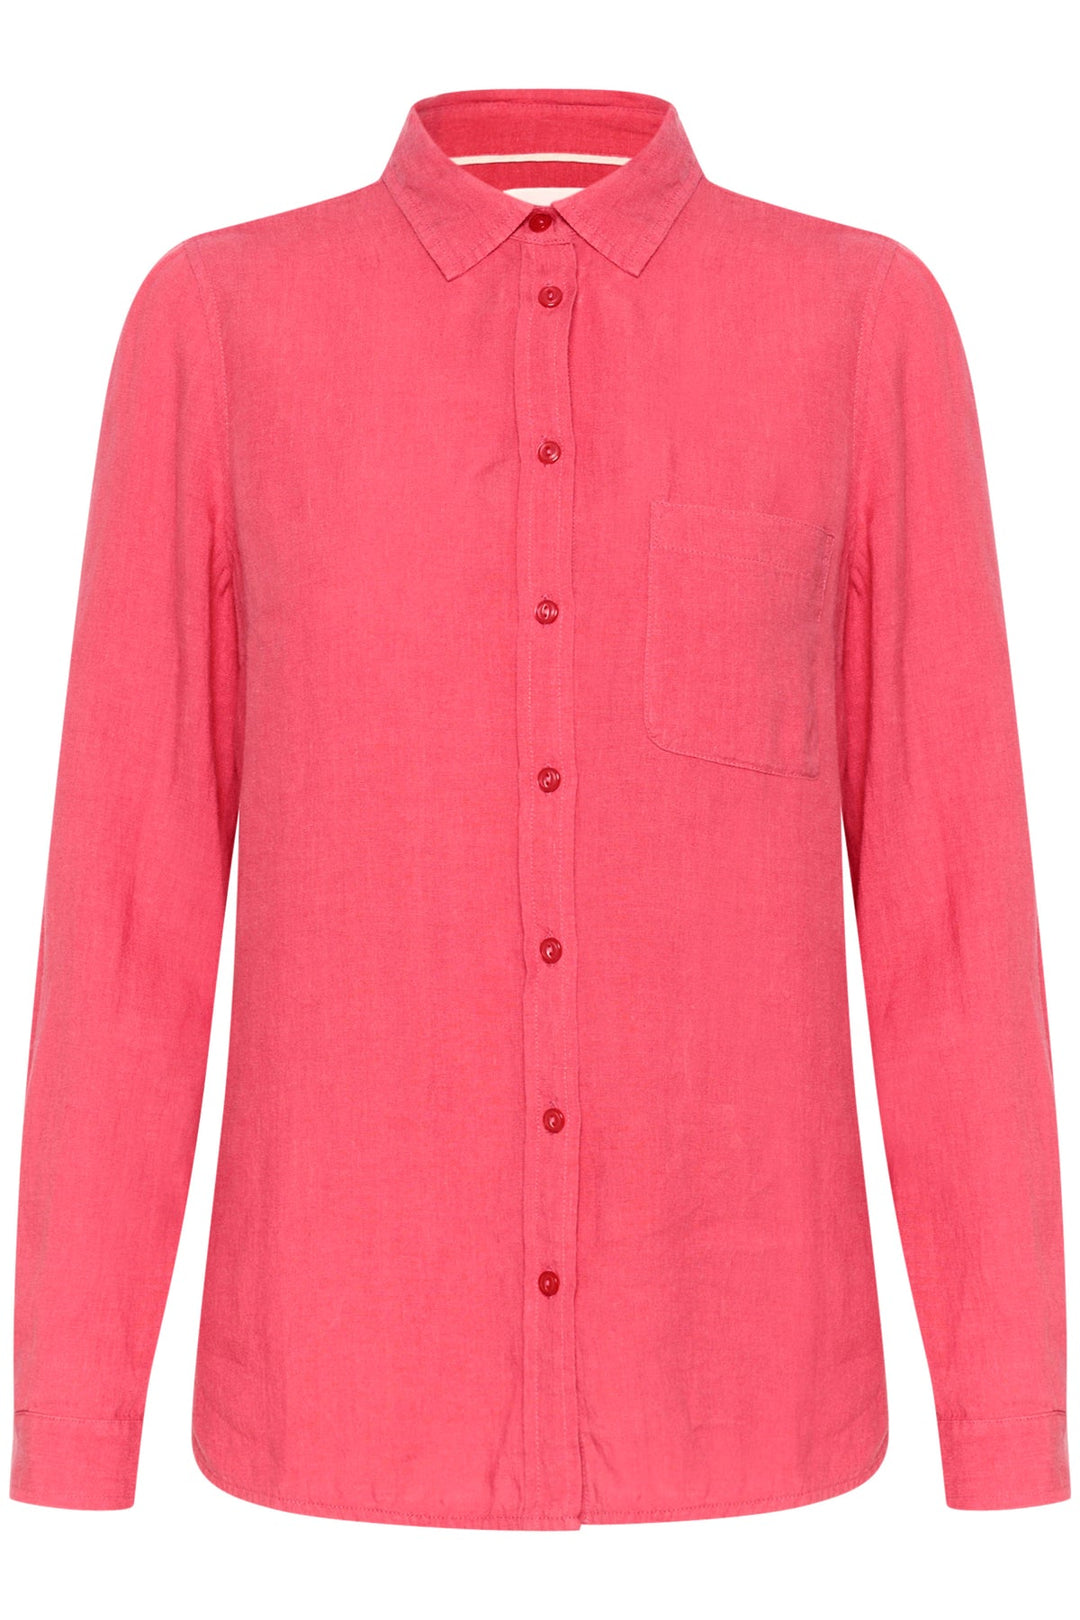 Kivaspw Shirt Claret Red | Skjorter og bluser | Smuk - Dameklær på nett